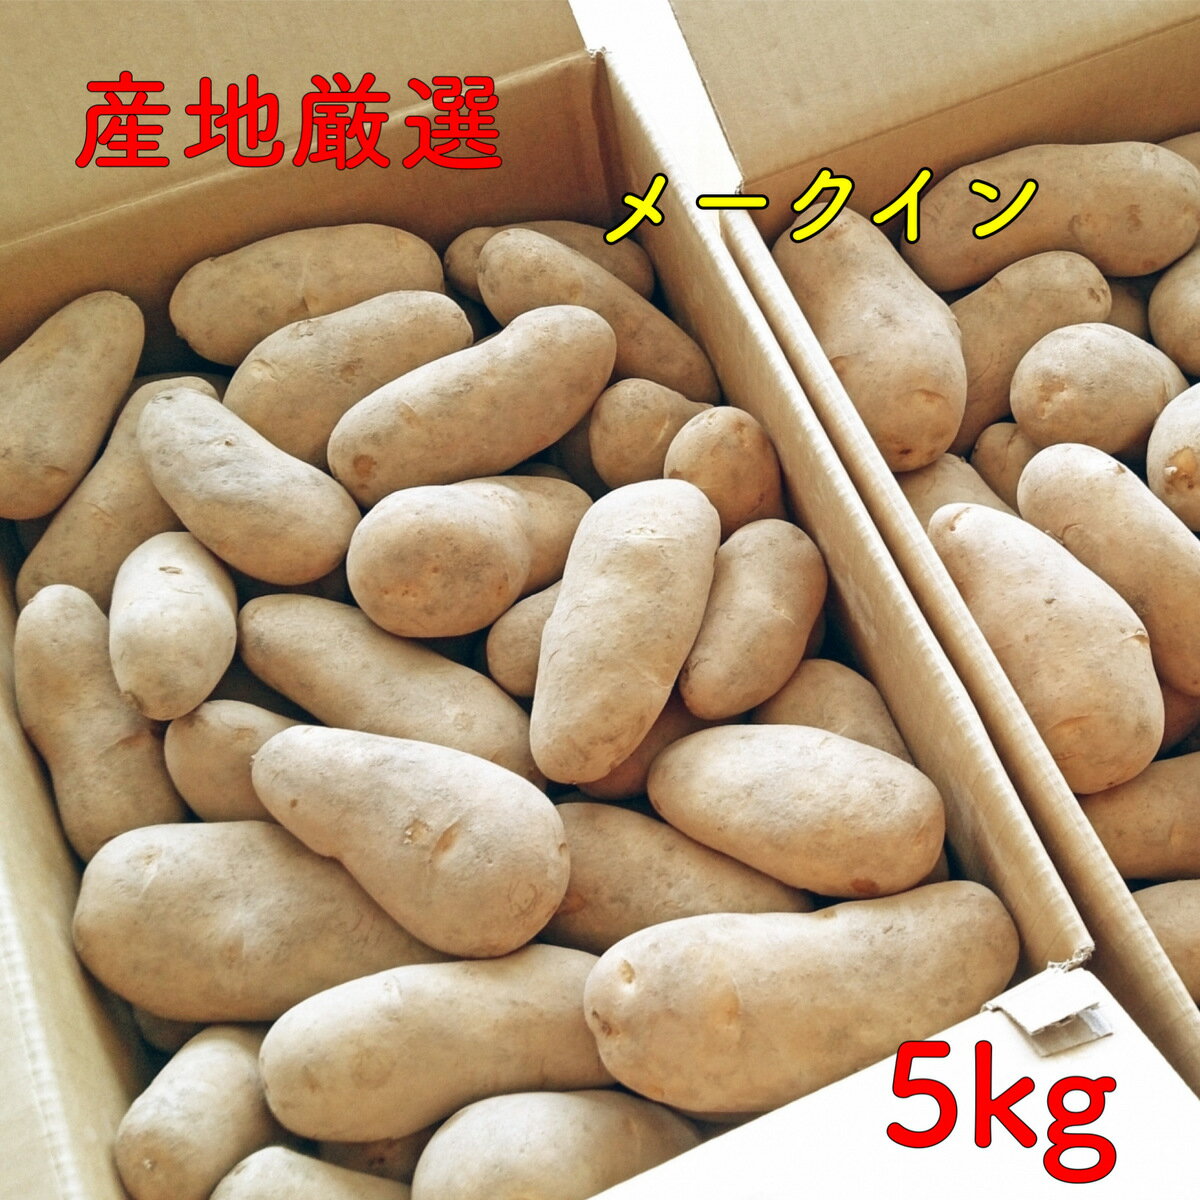 ジャガイモ じゃがいも メークイン 5kg 大きさおまかせ 市場直送 野菜 九州 四国 本州 北海道 産地おまかせ 訳あり わけあり